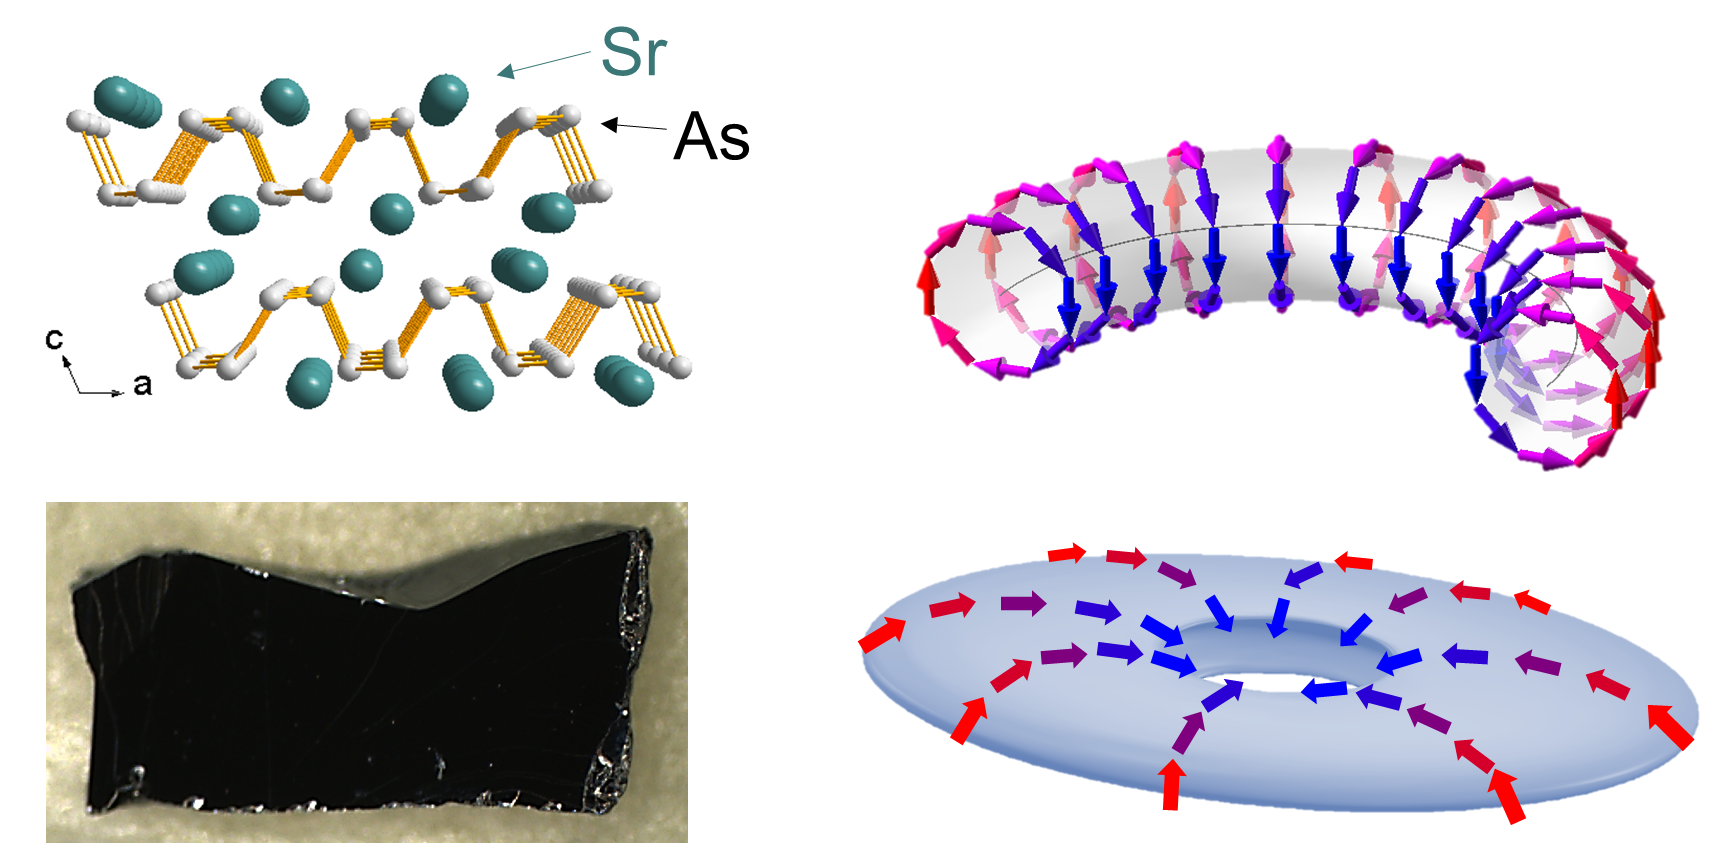 [그림1] 새로운 위상물질 스트론튬-비소 화합물(SrAs3) 전자구조